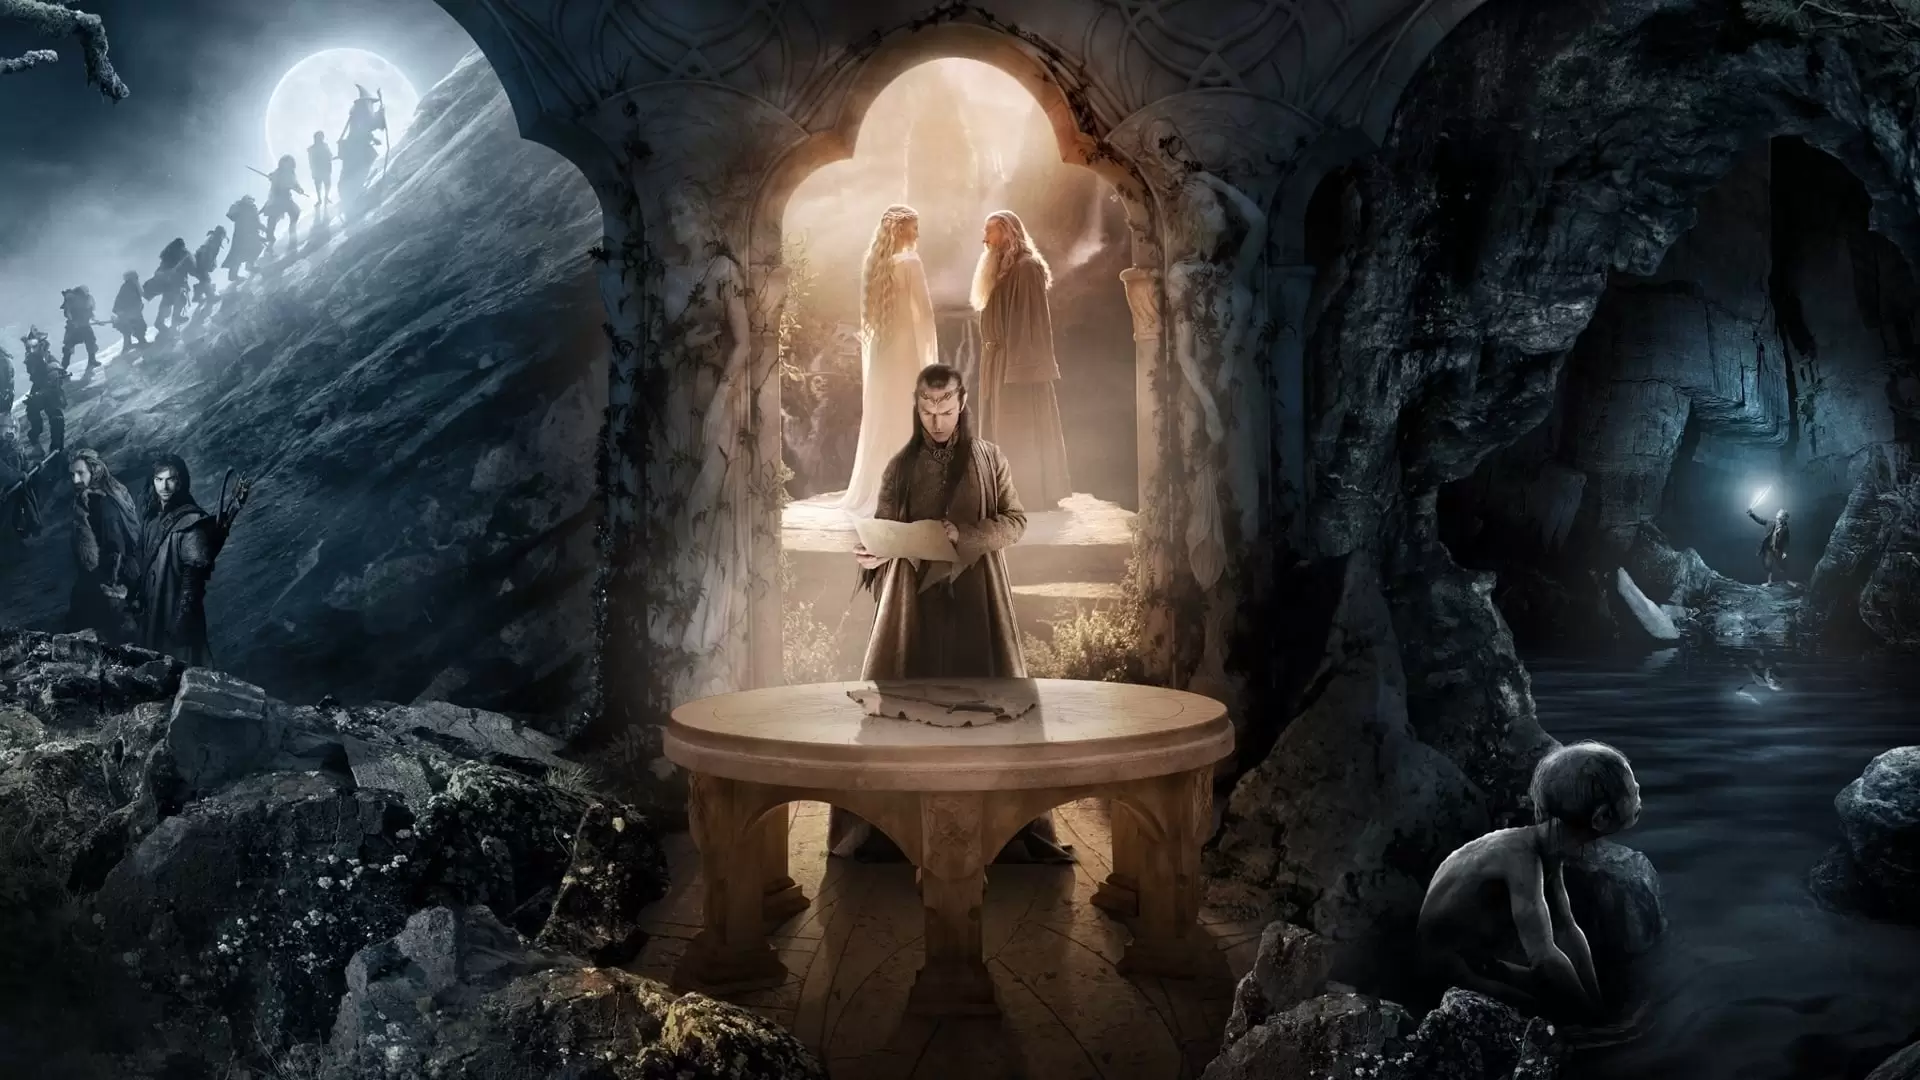 دانلود فیلم The Hobbit: An Unexpected Journey 2012 (سرزمین میانه ۱: هابیت ۱: سفر غیرمنتظره) با زیرنویس فارسی و تماشای آنلاین